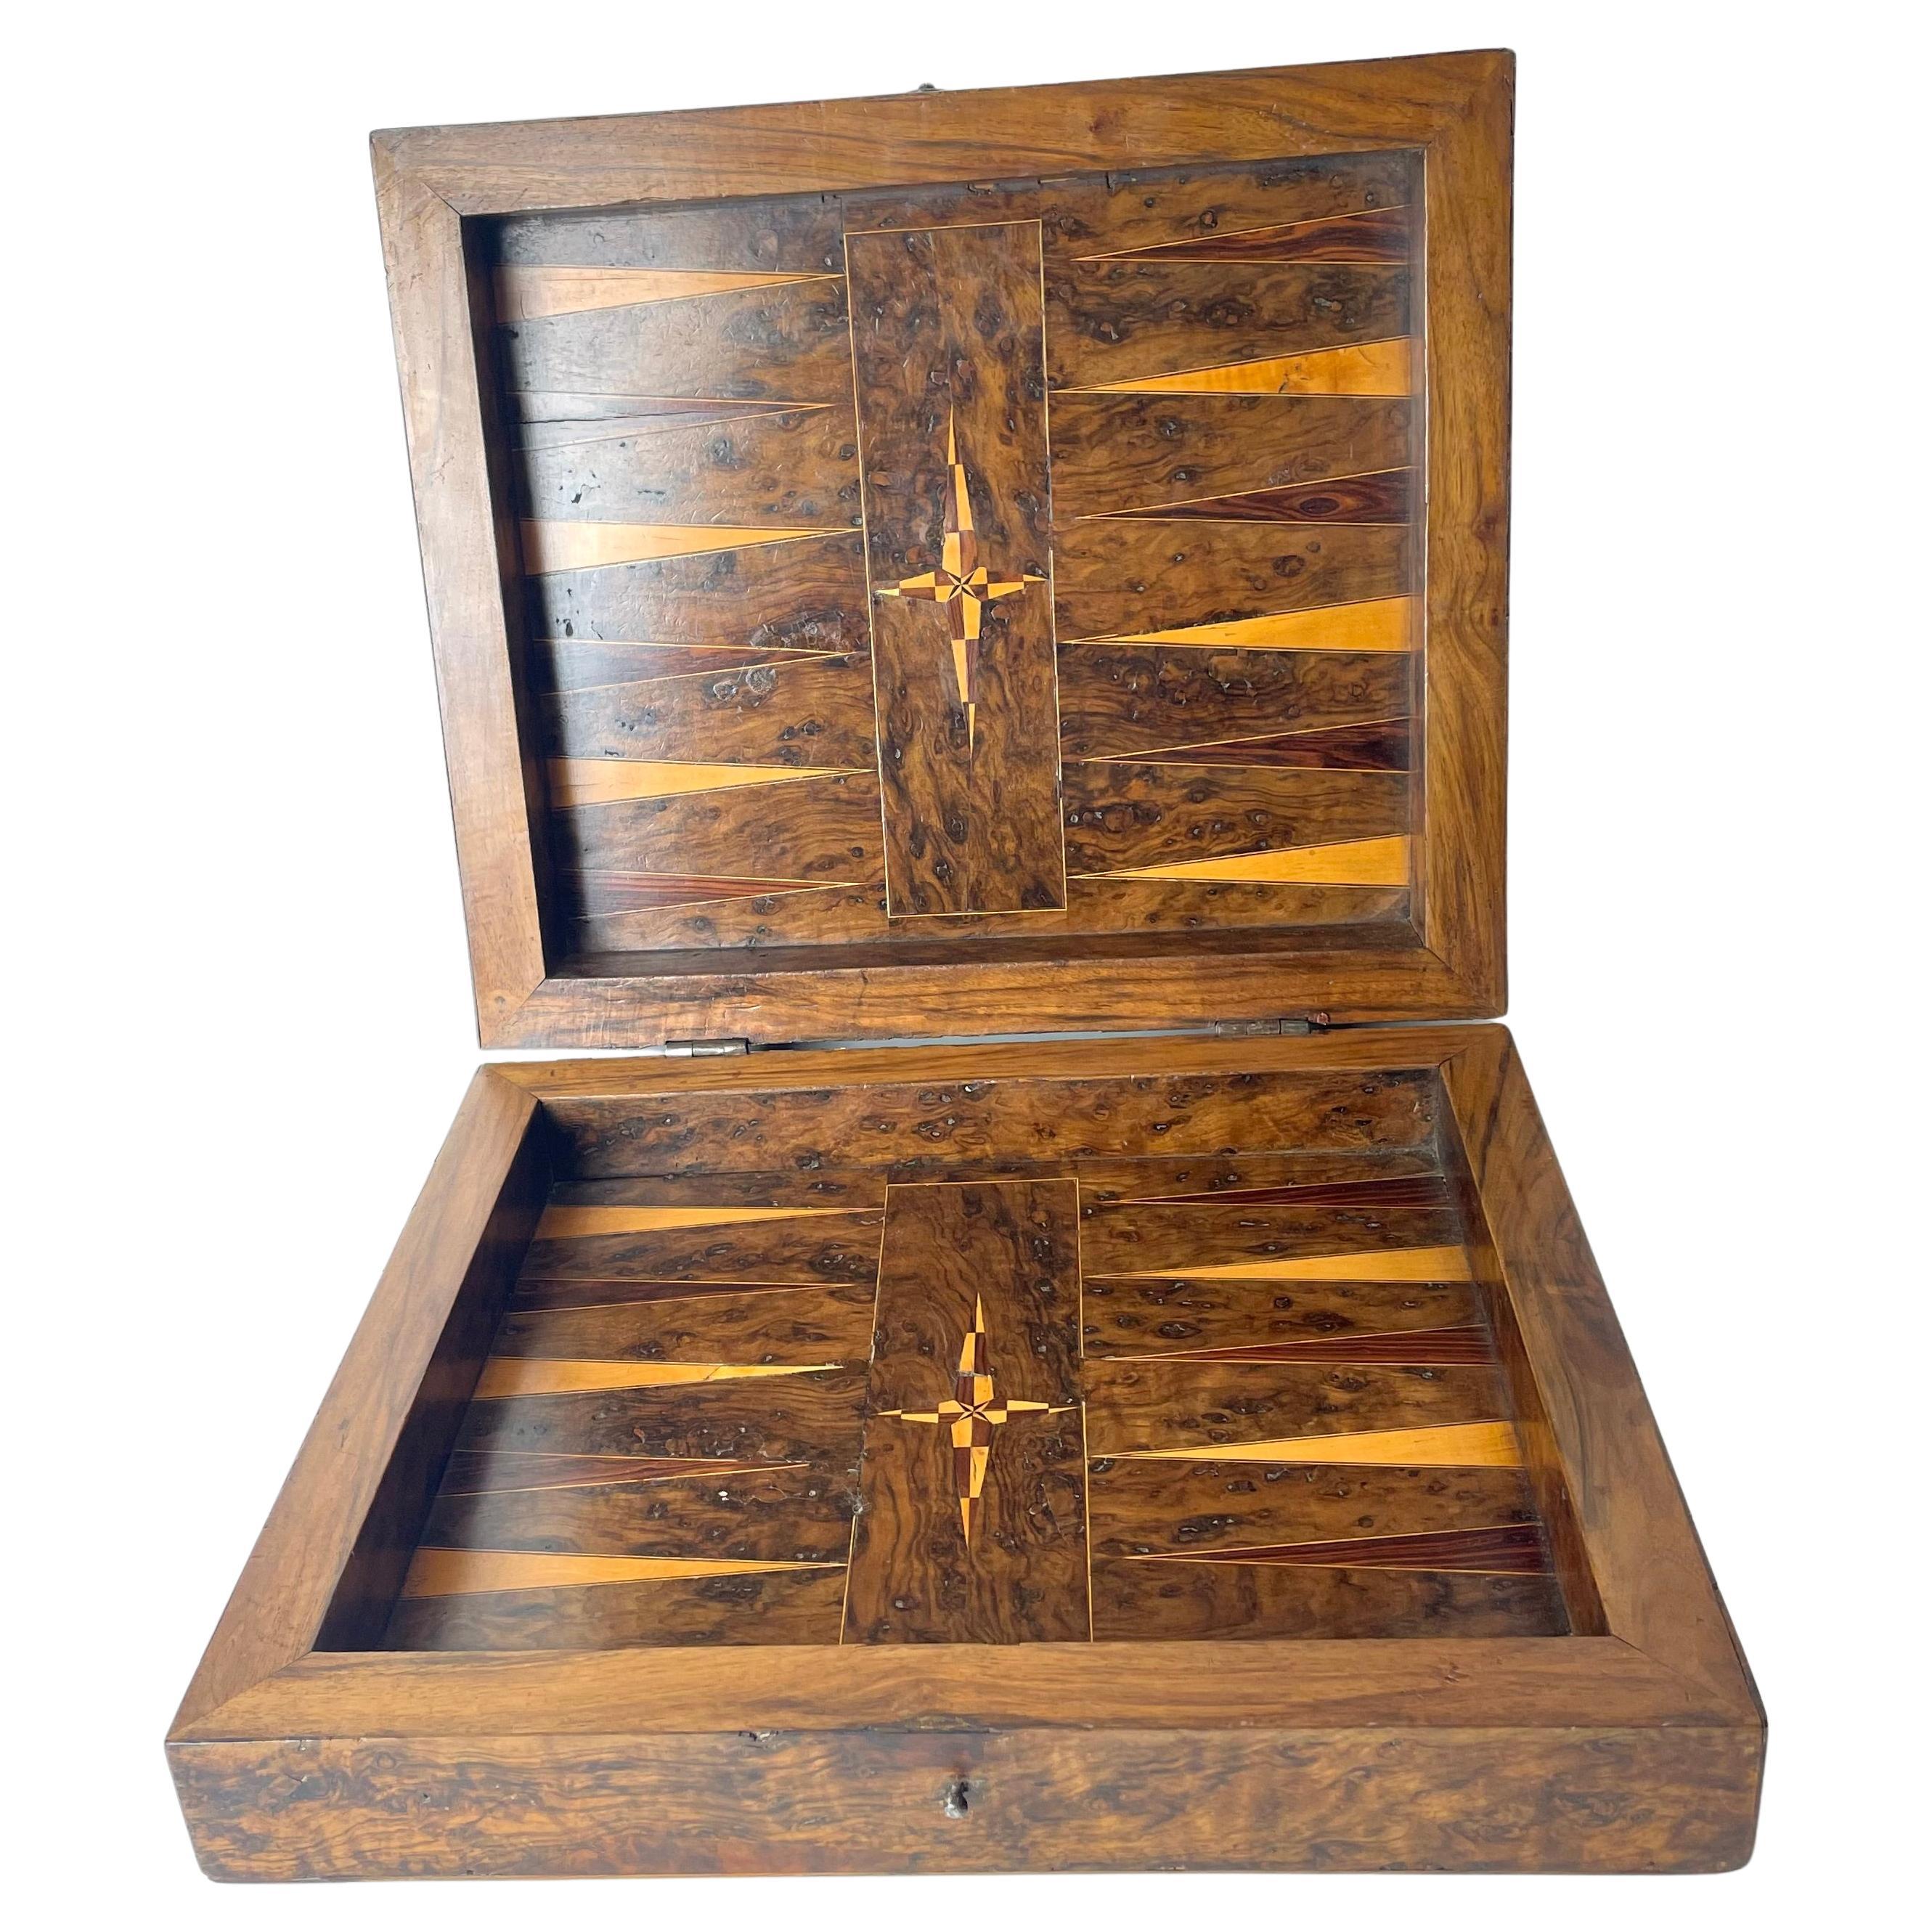 Schachbrett-Rückgammon-Schachtel aus dem späten Barock, dekoriert mit reichhaltigem Holz innen.  